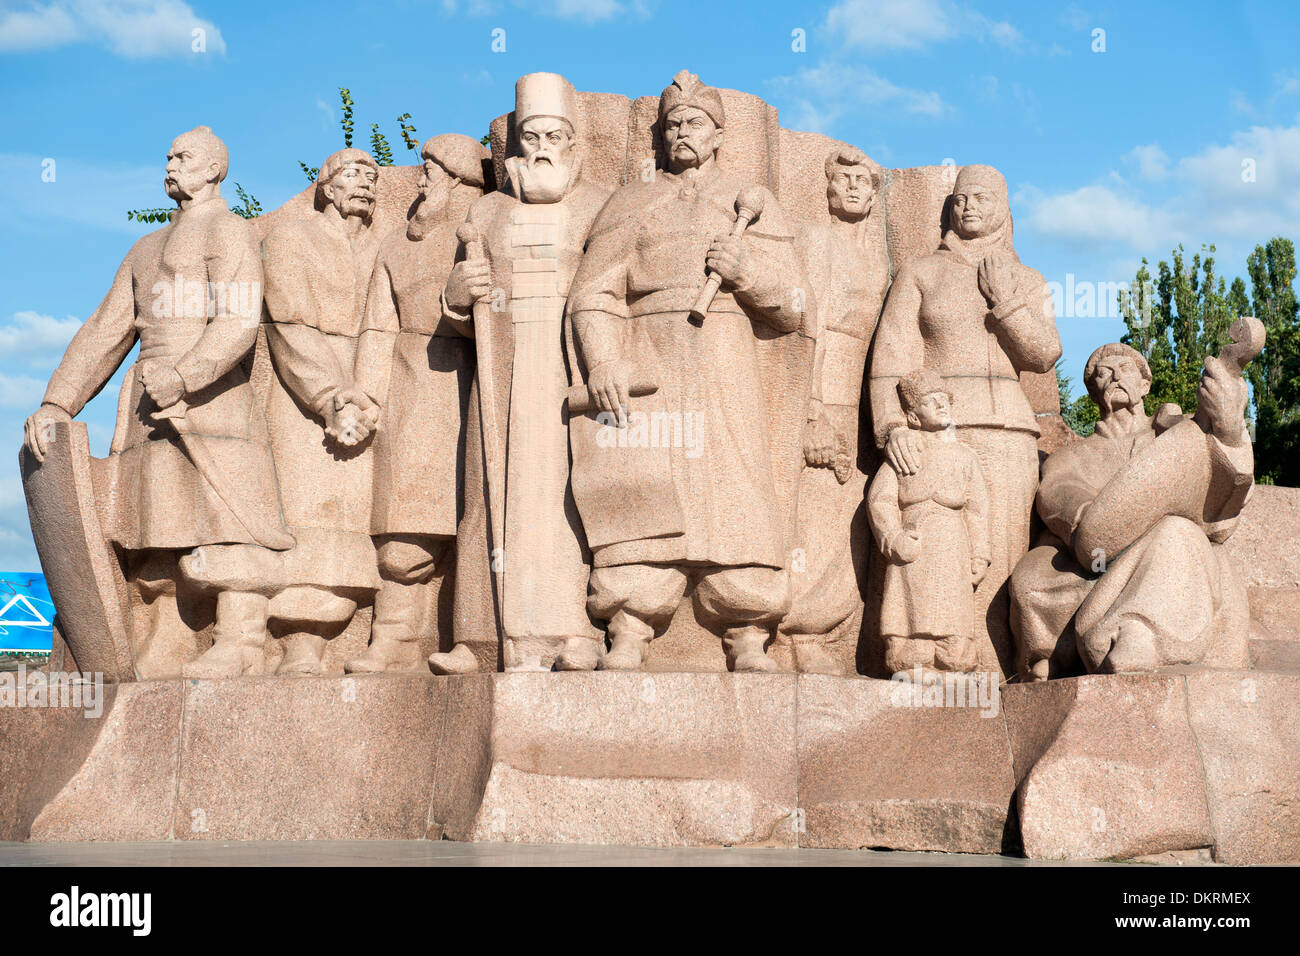 Eine Granit-Stele mit den Teilnehmern des Pereyaslav Rates von 1654. Dieses Denkmal ist in Kiew, die Hauptstadt der Ukraine. Stockfoto